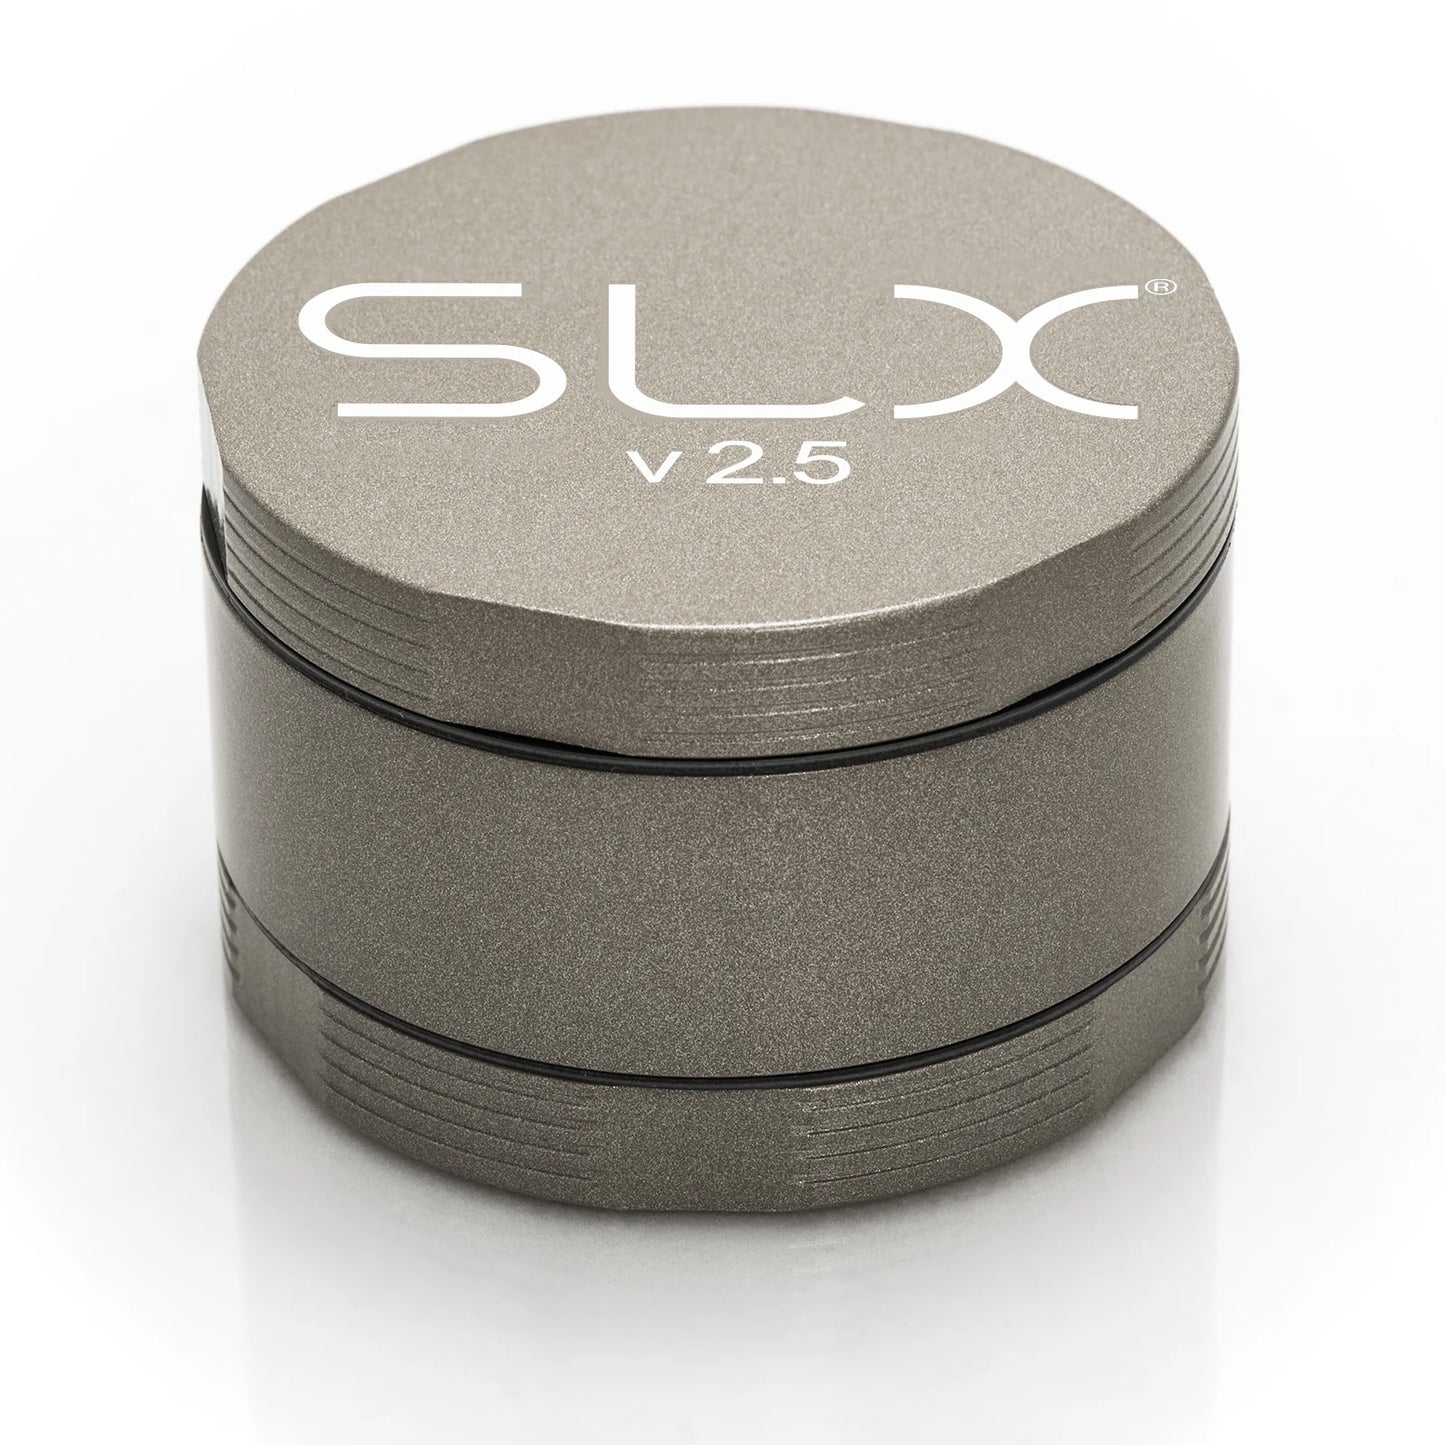 SLX v2.5 2.0" Ceramic Coat Grinder - Champagne Gold